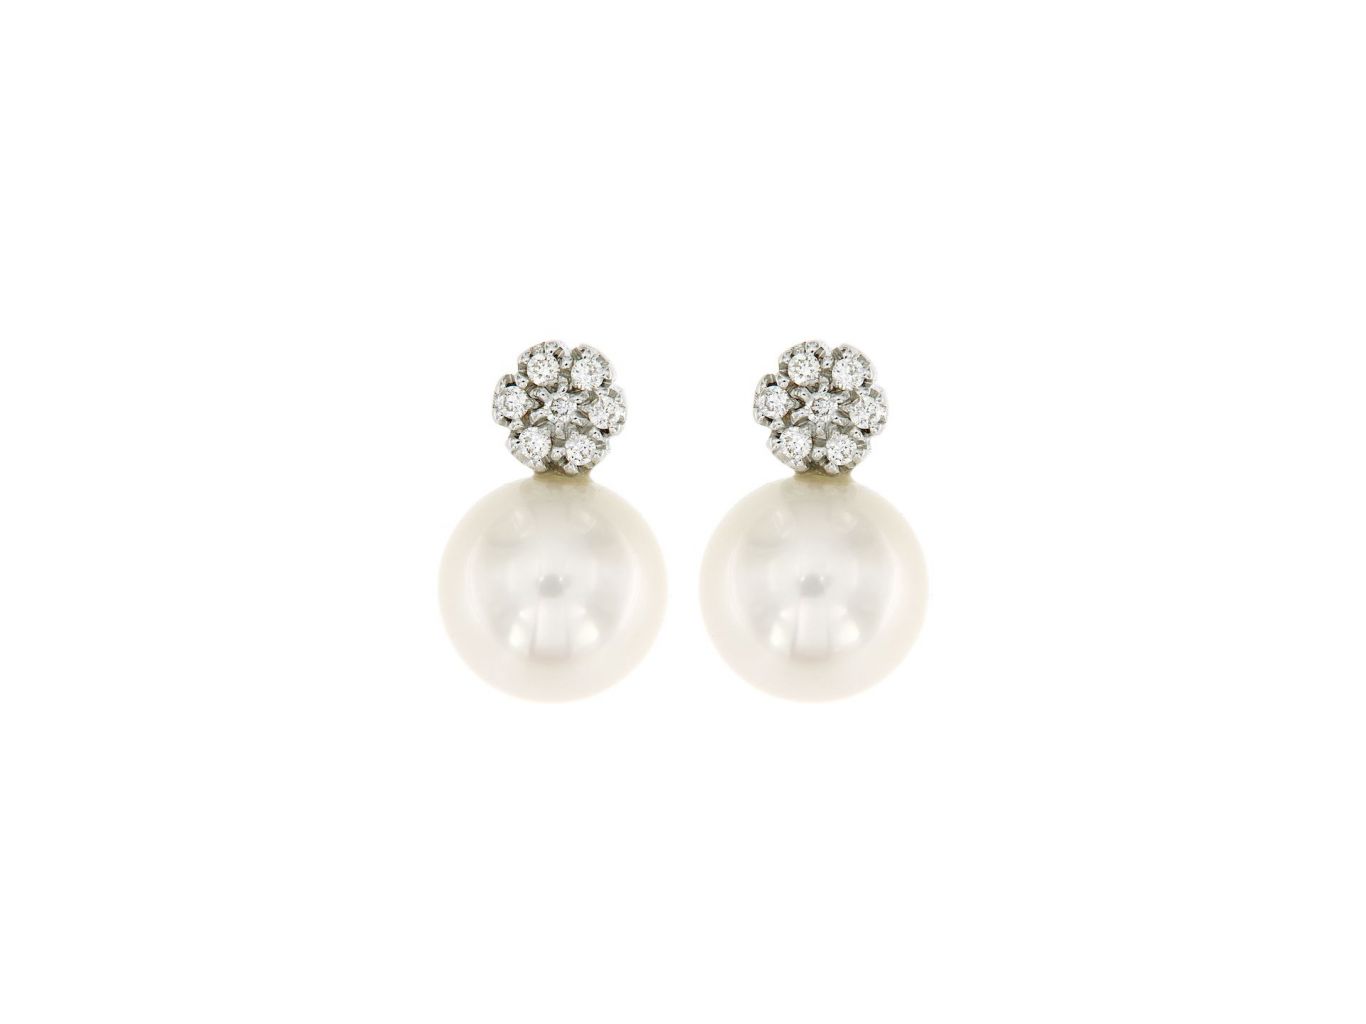 Orecchini con perle coltivate, 9.5 mm, oro bianco 750 con diamanti